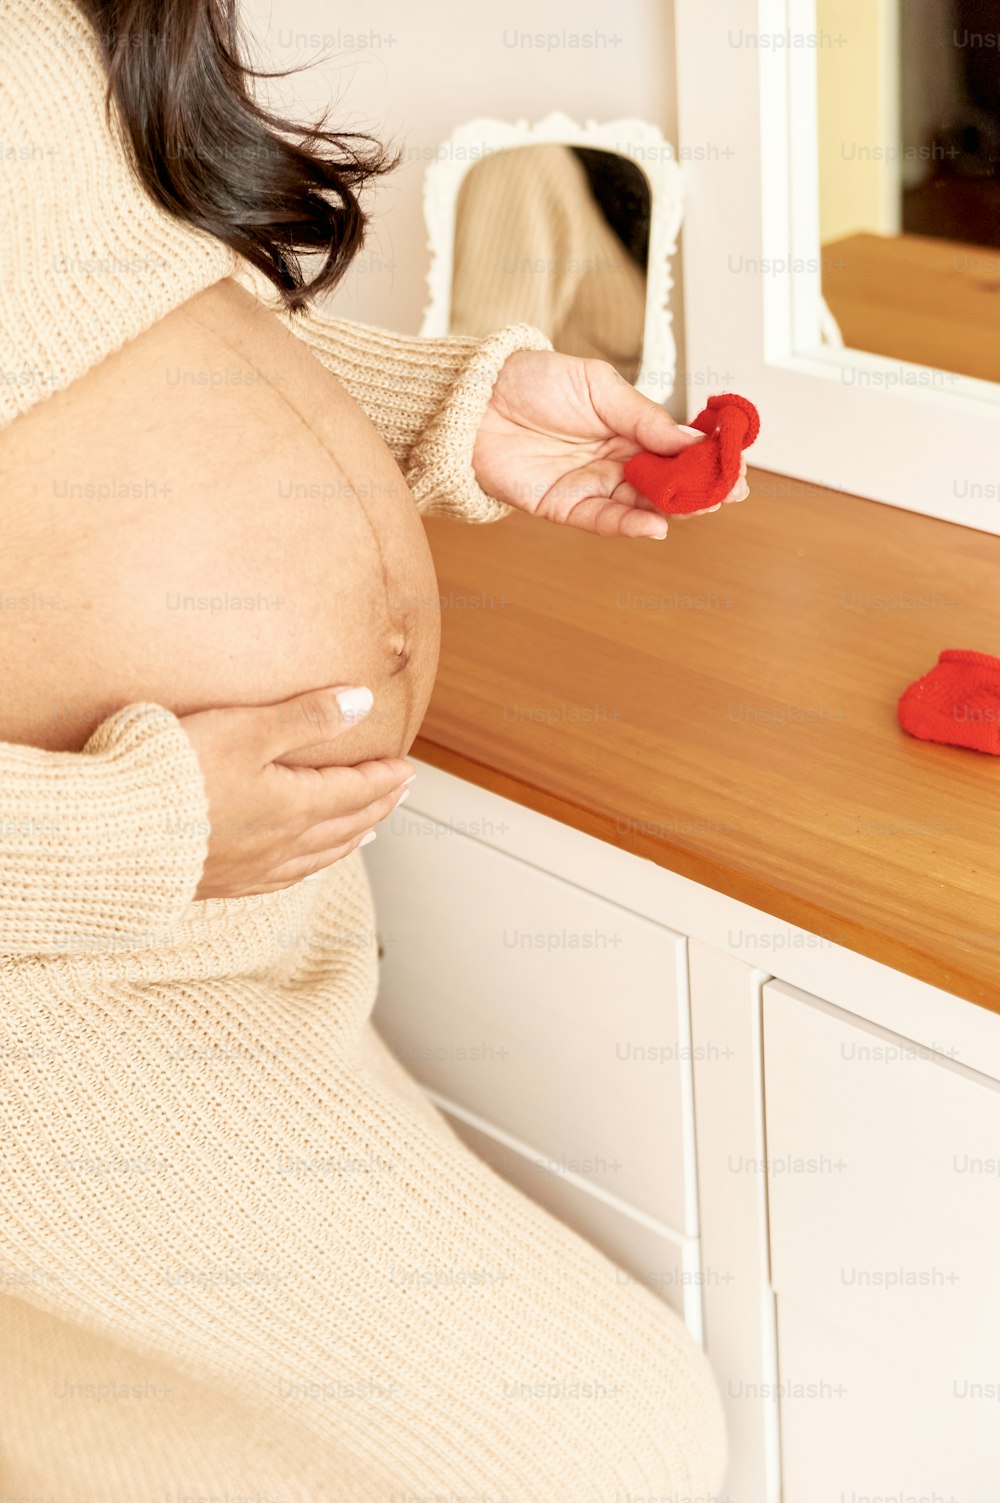 une femme enceinte tenant un objet rouge dans sa main